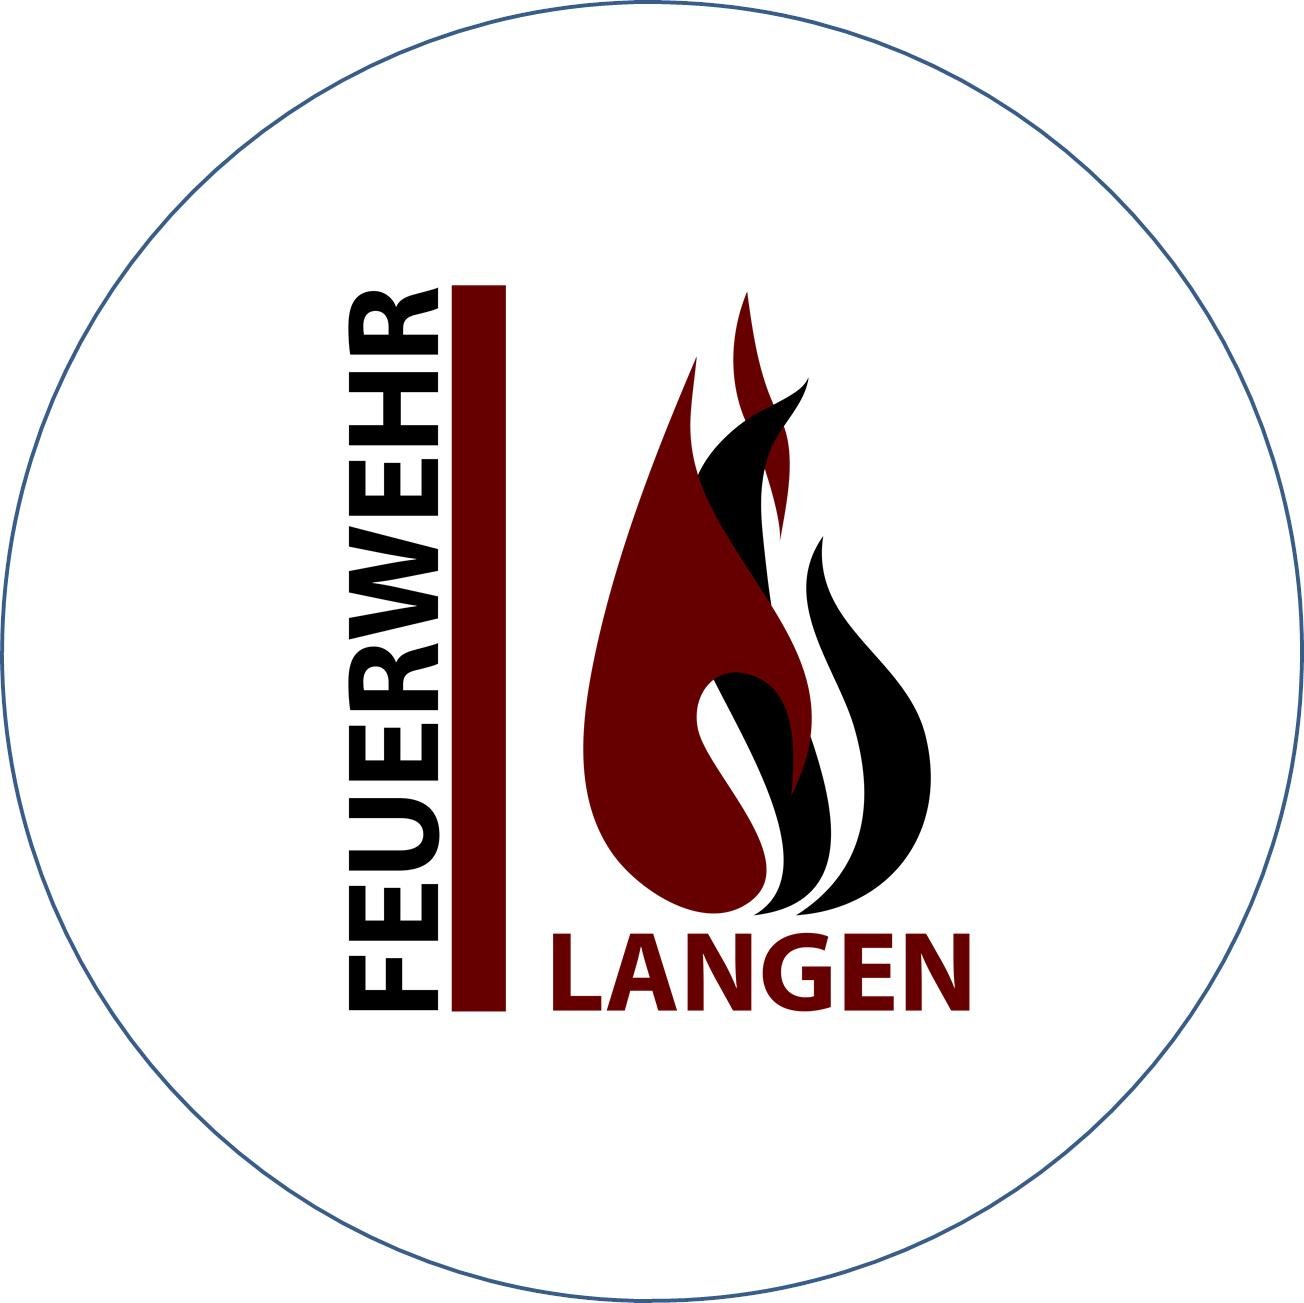 Dies ist der offizielle Account der Feuerwehr Langen (Hessen). Im Notfall nutzen Sie bitte ausschließlich die Notruf-Nummer 112!